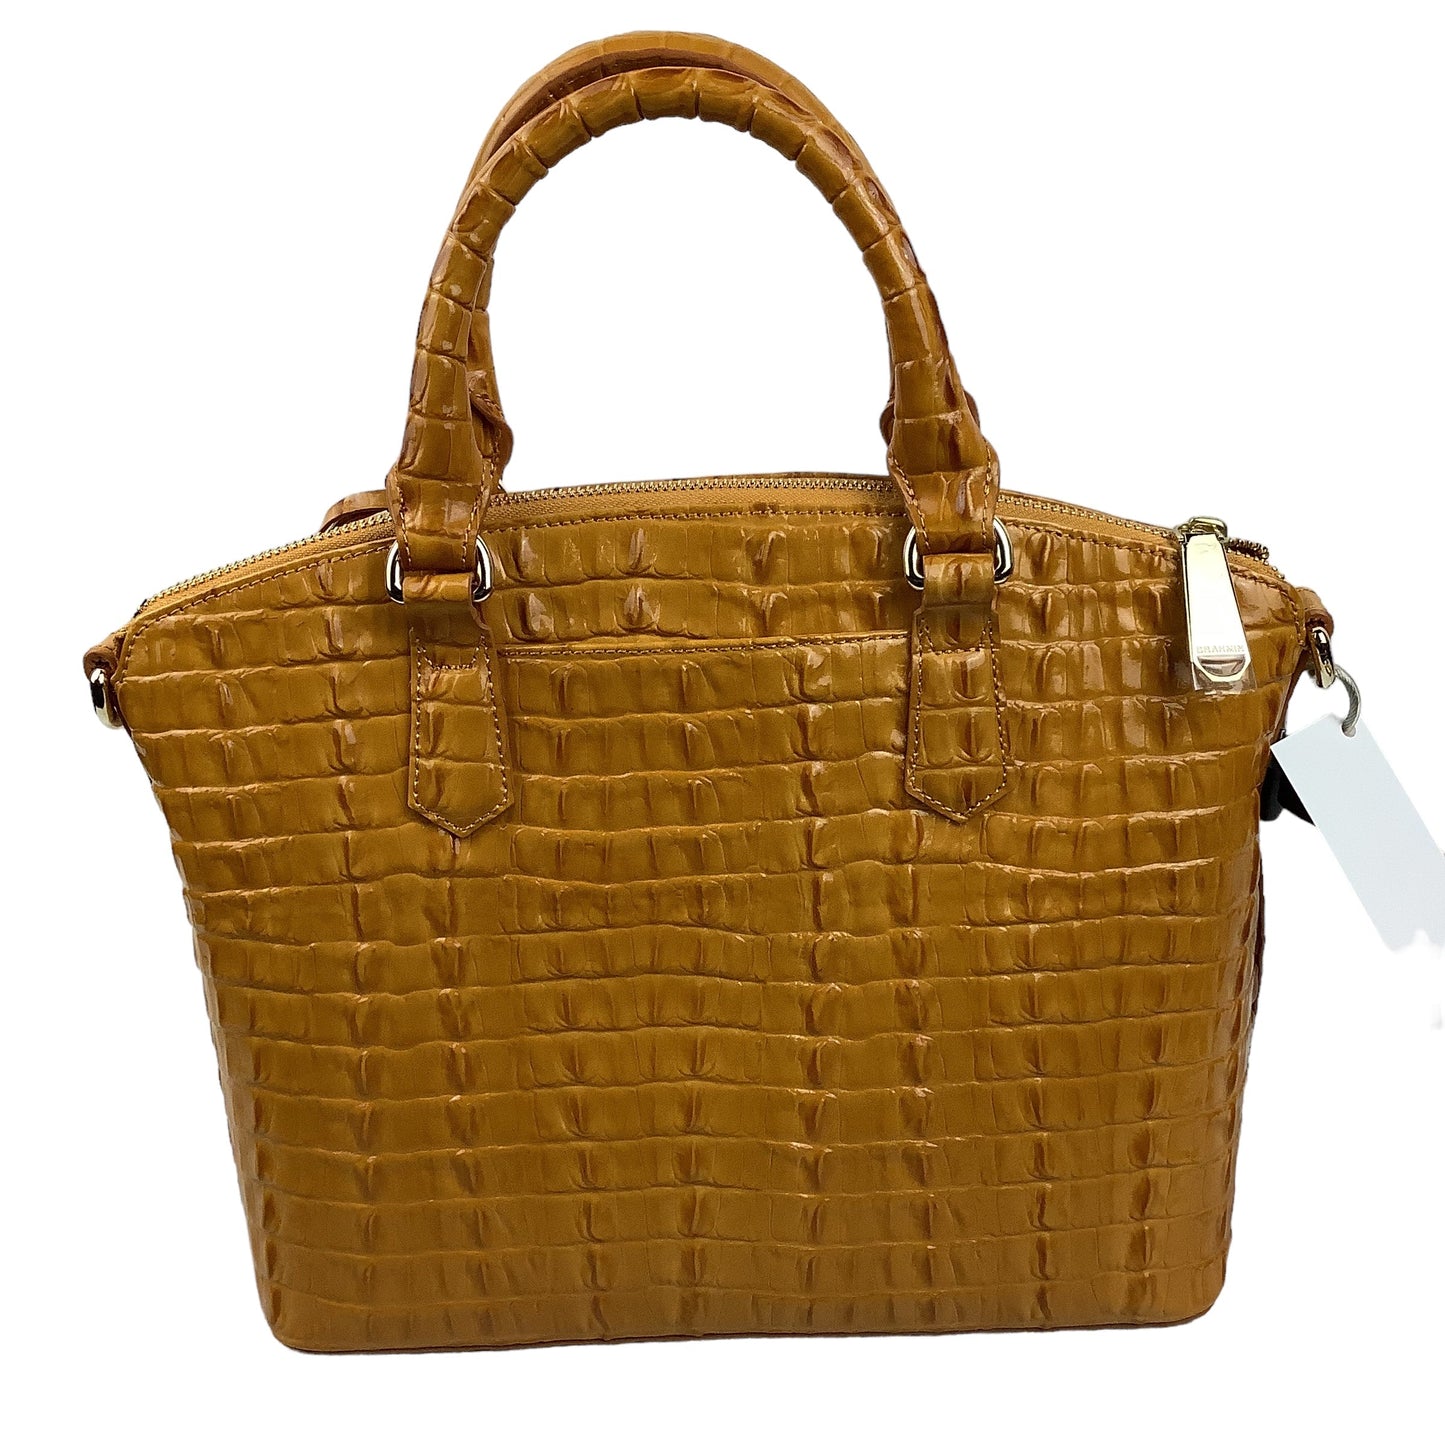 Handbag Designer Brahmin, Size Medium